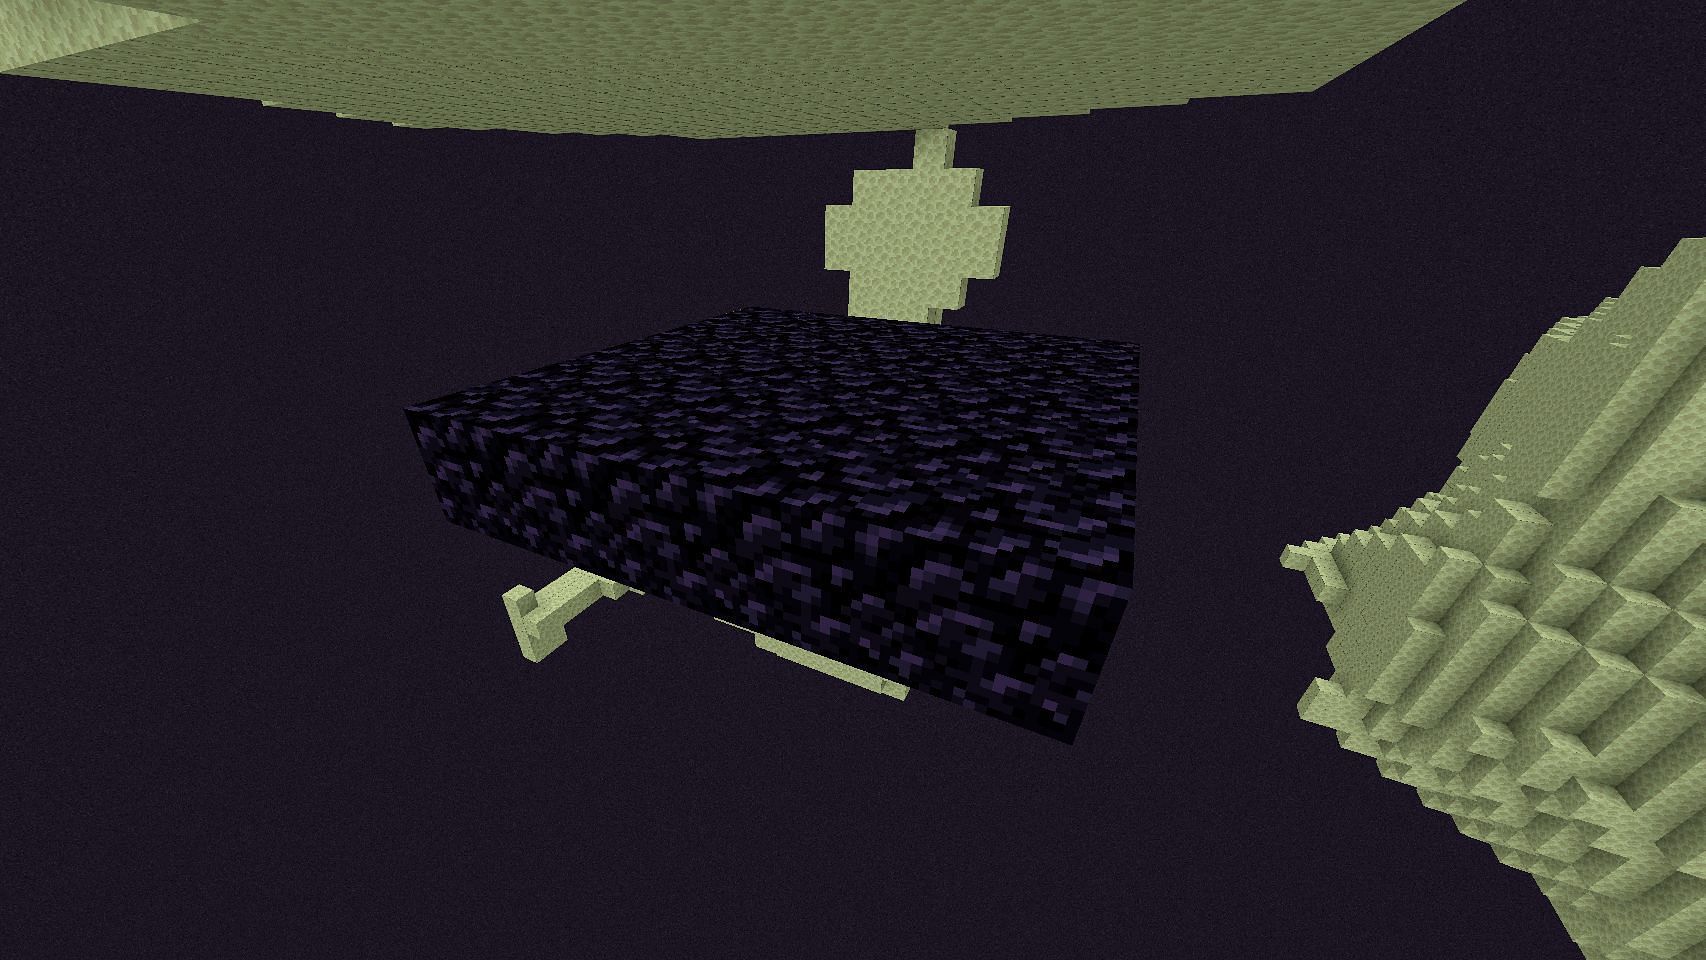 Minecraft Redditor got stuck on the obsidian platform after entering End (Image via Mojang Studios)